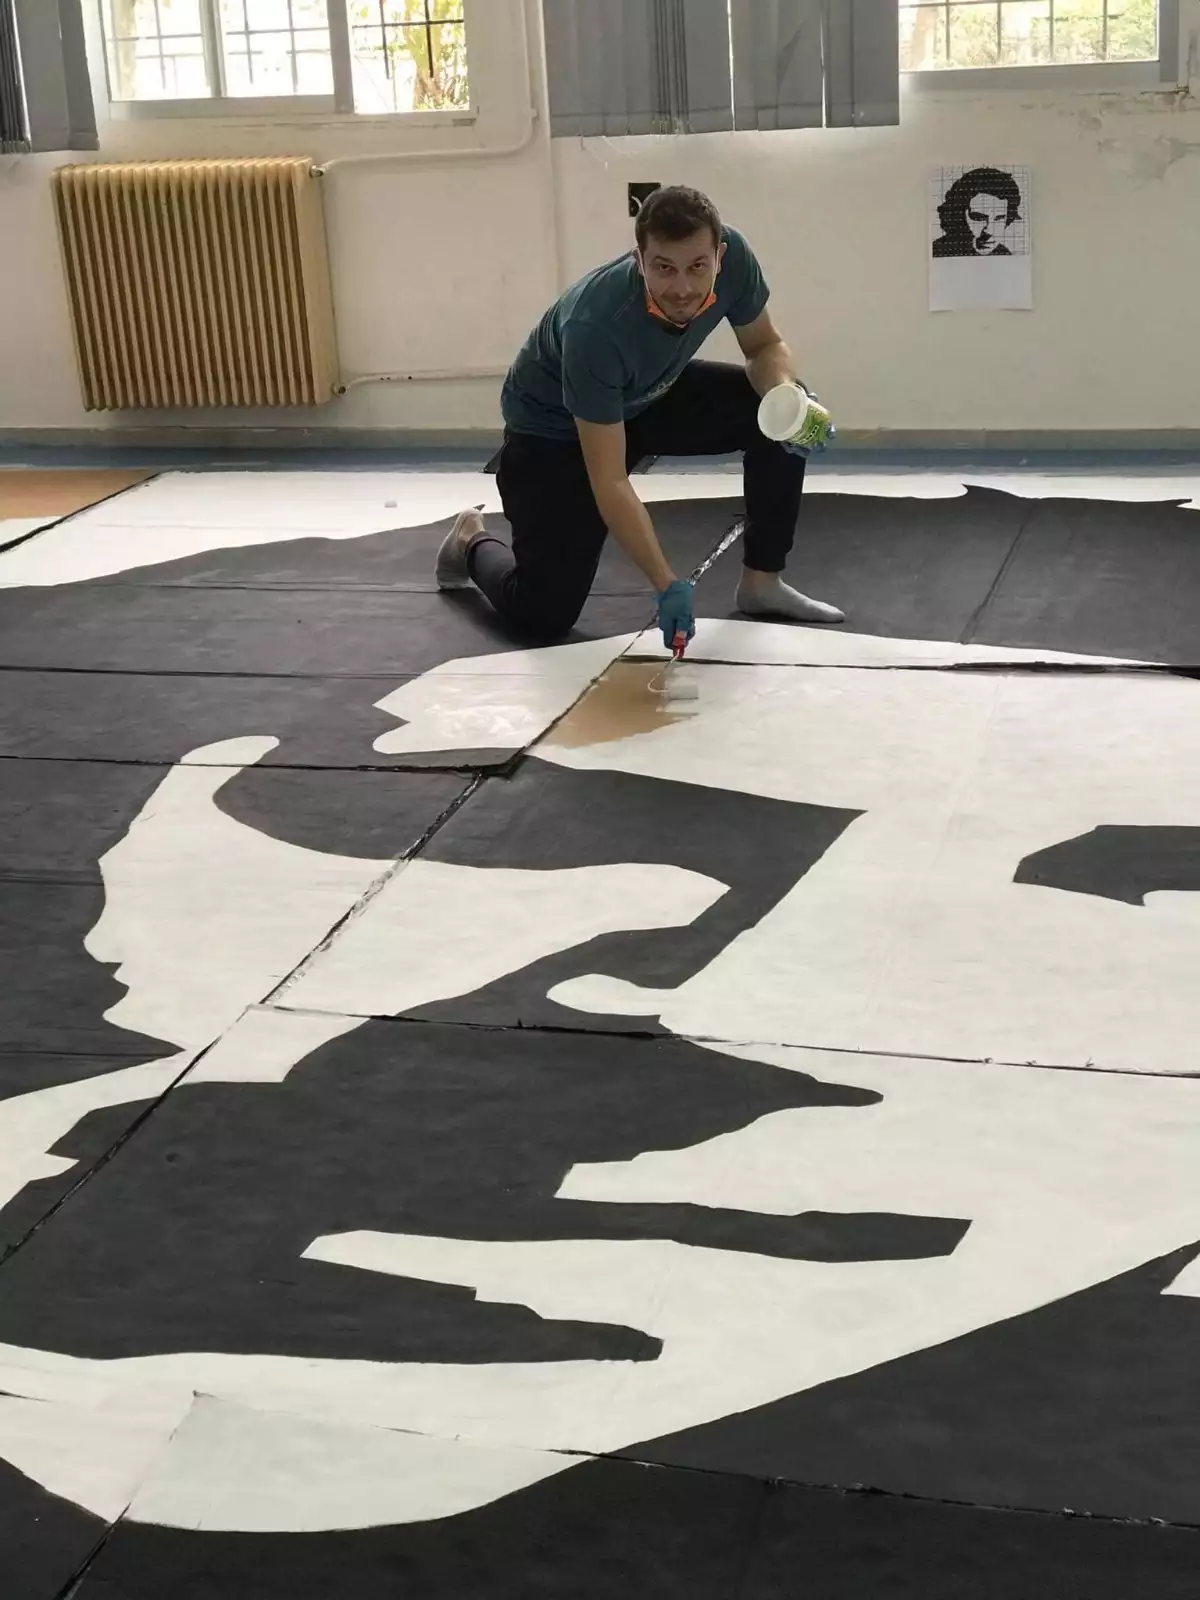 Ξάνθη: Μαθητές έφτιαξαν πορτρέτο του Μίκη Θεοδωράκη 35 τετραγωνικών (φωτο, video)